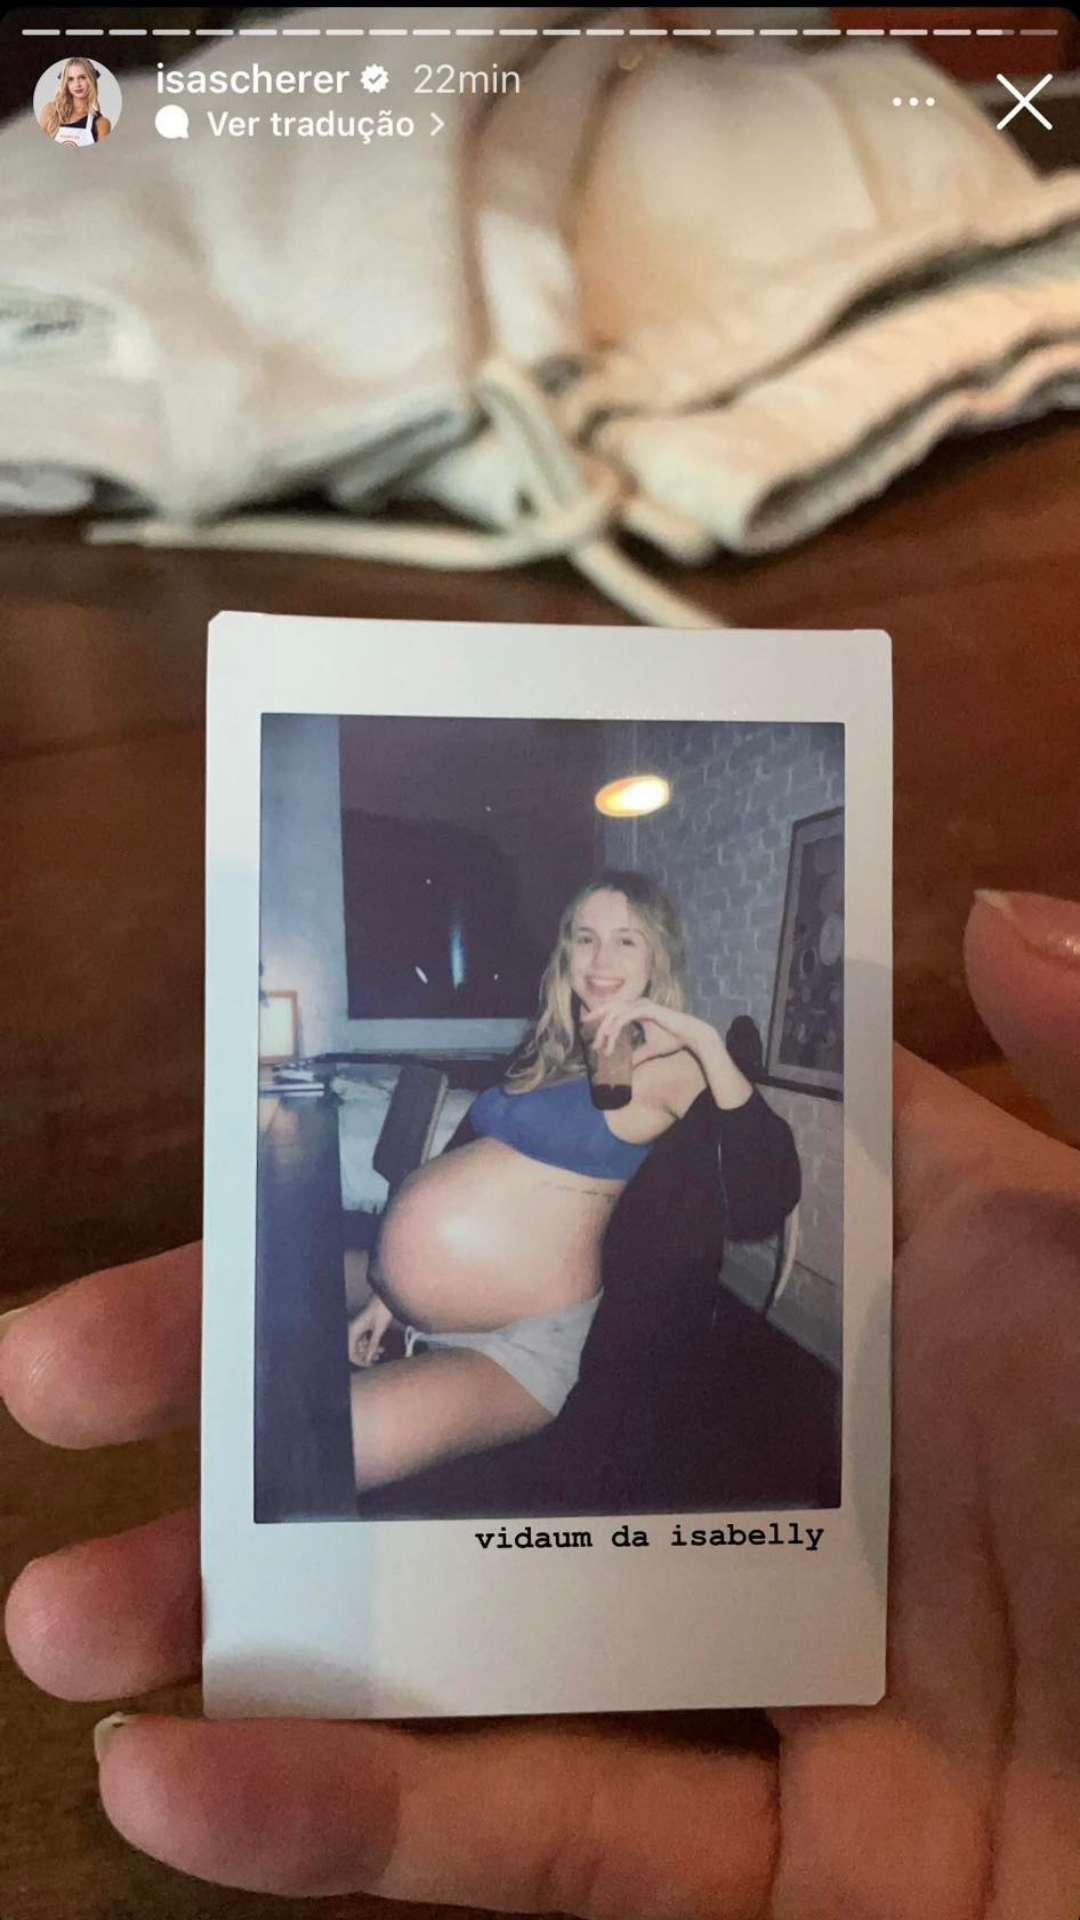 Isabella Scherer surpreende com tamanho de sua barriga na reta final da gravidez. Crédito: Reprodução/Instagram